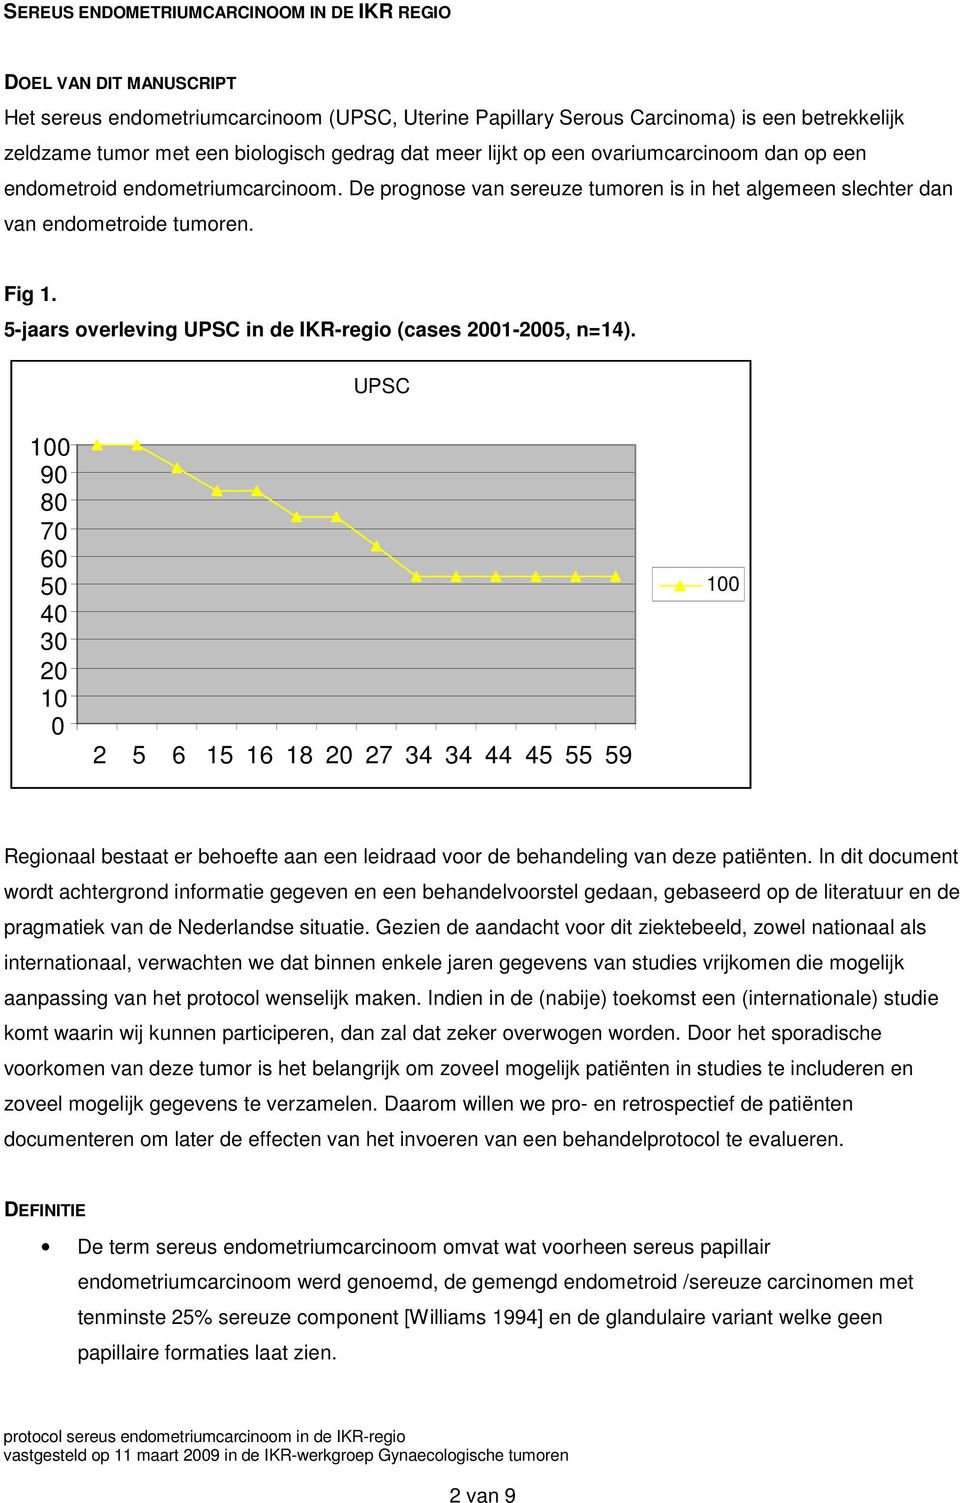 5-jaars overleving UPSC in de IKR-regio (cases 2001-2005, n=14).